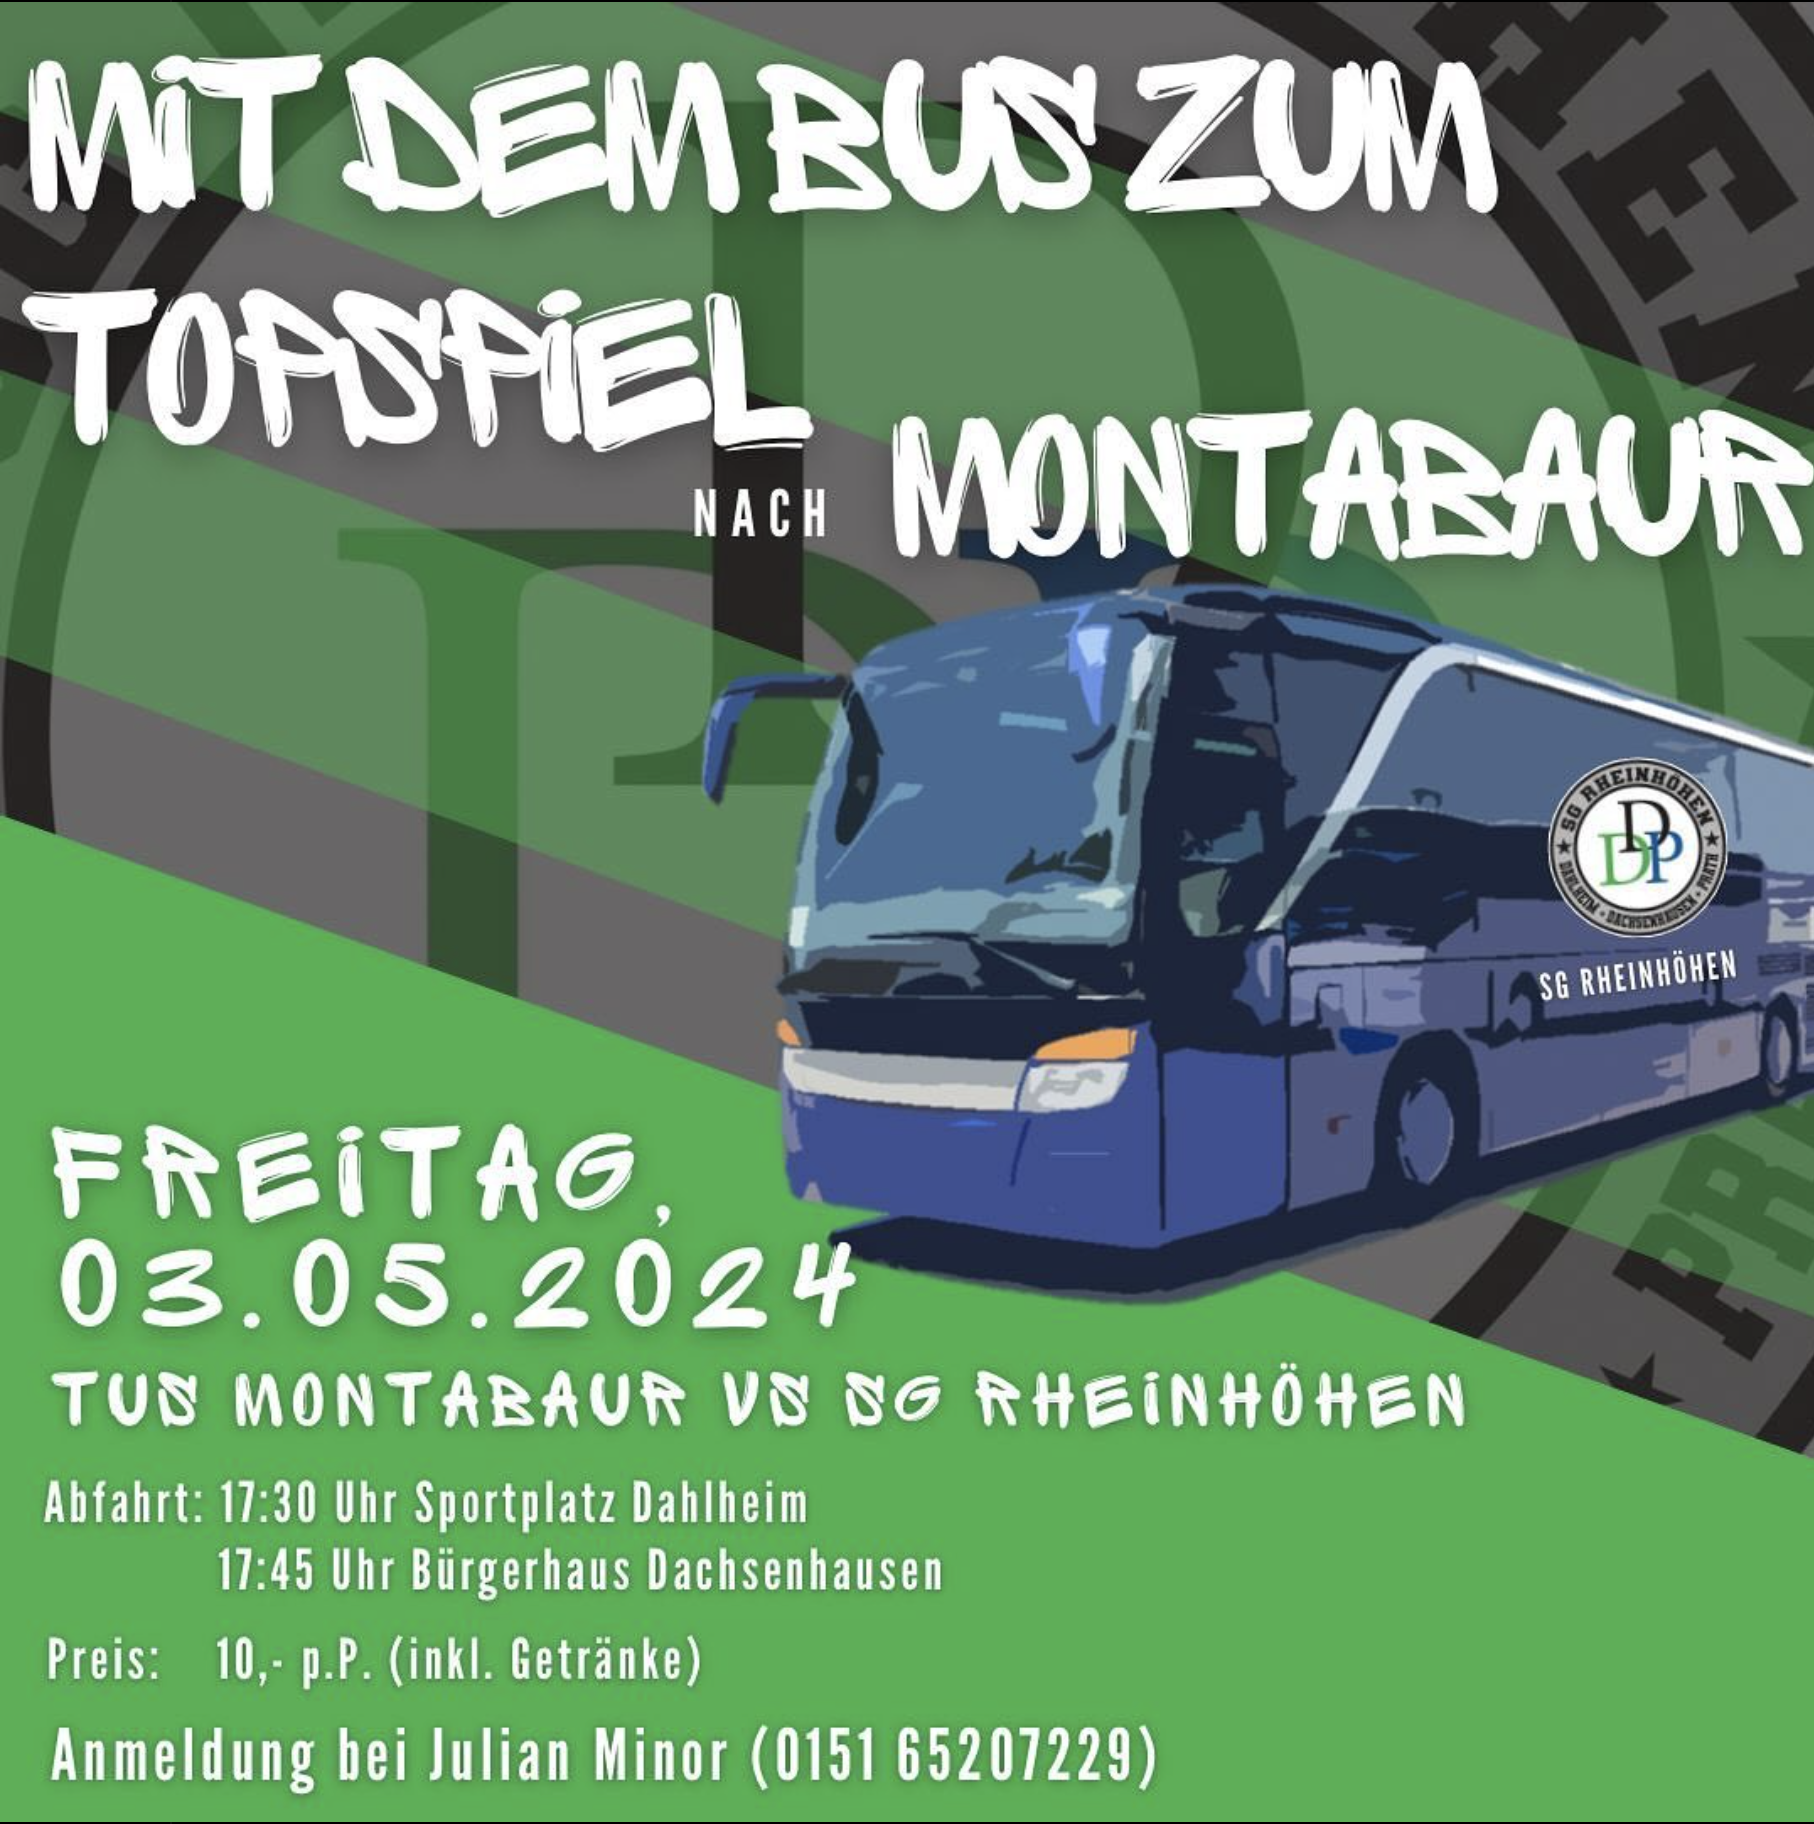 Mit dem Bus zum Topspiel nach Montabaur am 3.5.